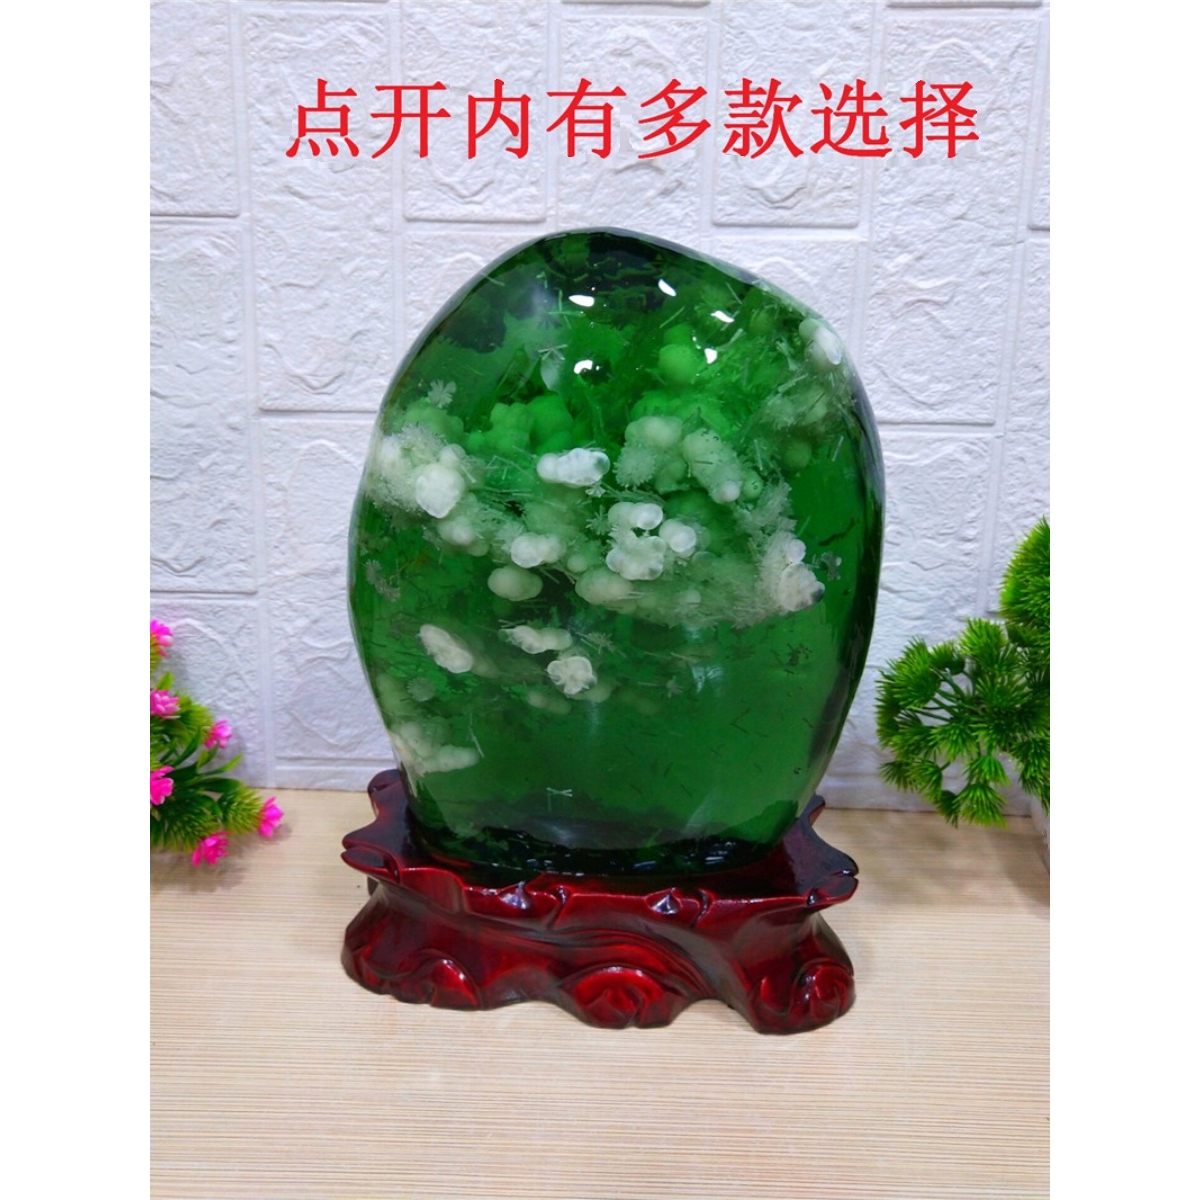 包邮水晶琉璃美轮美奂晶莹剔透奇石天然观赏石绿色石头摆件收藏品